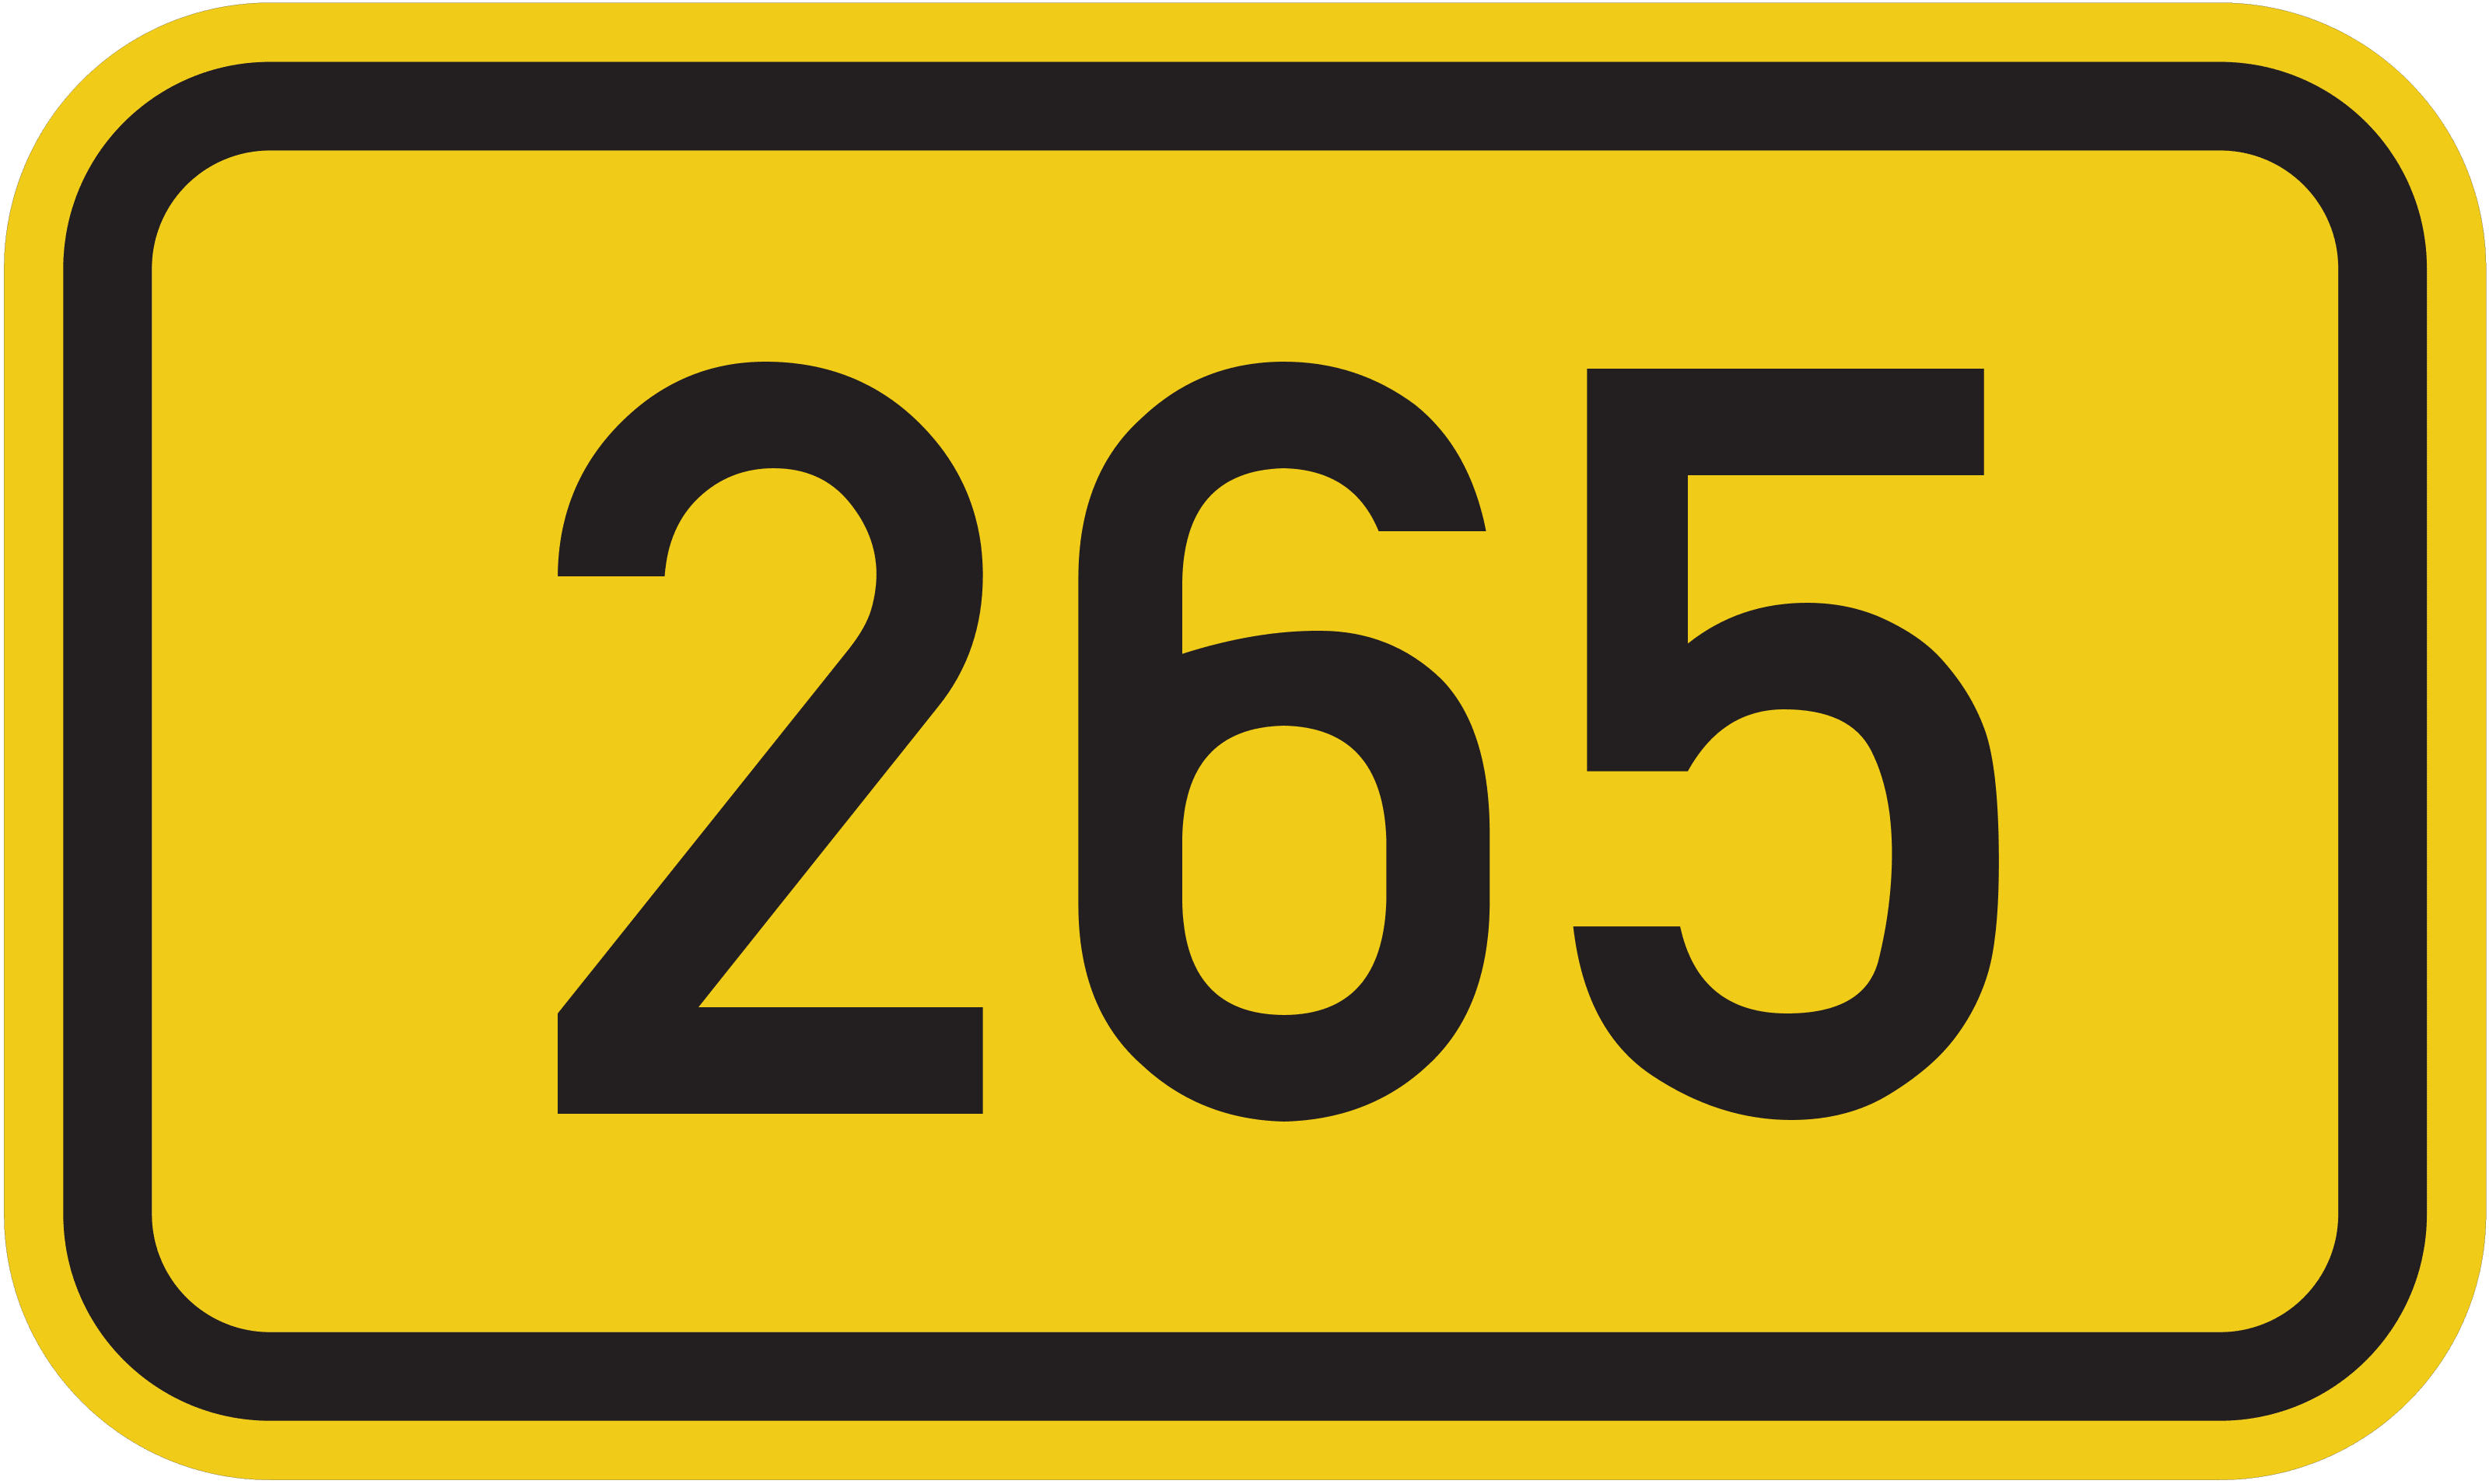 Bundesstraße B 265